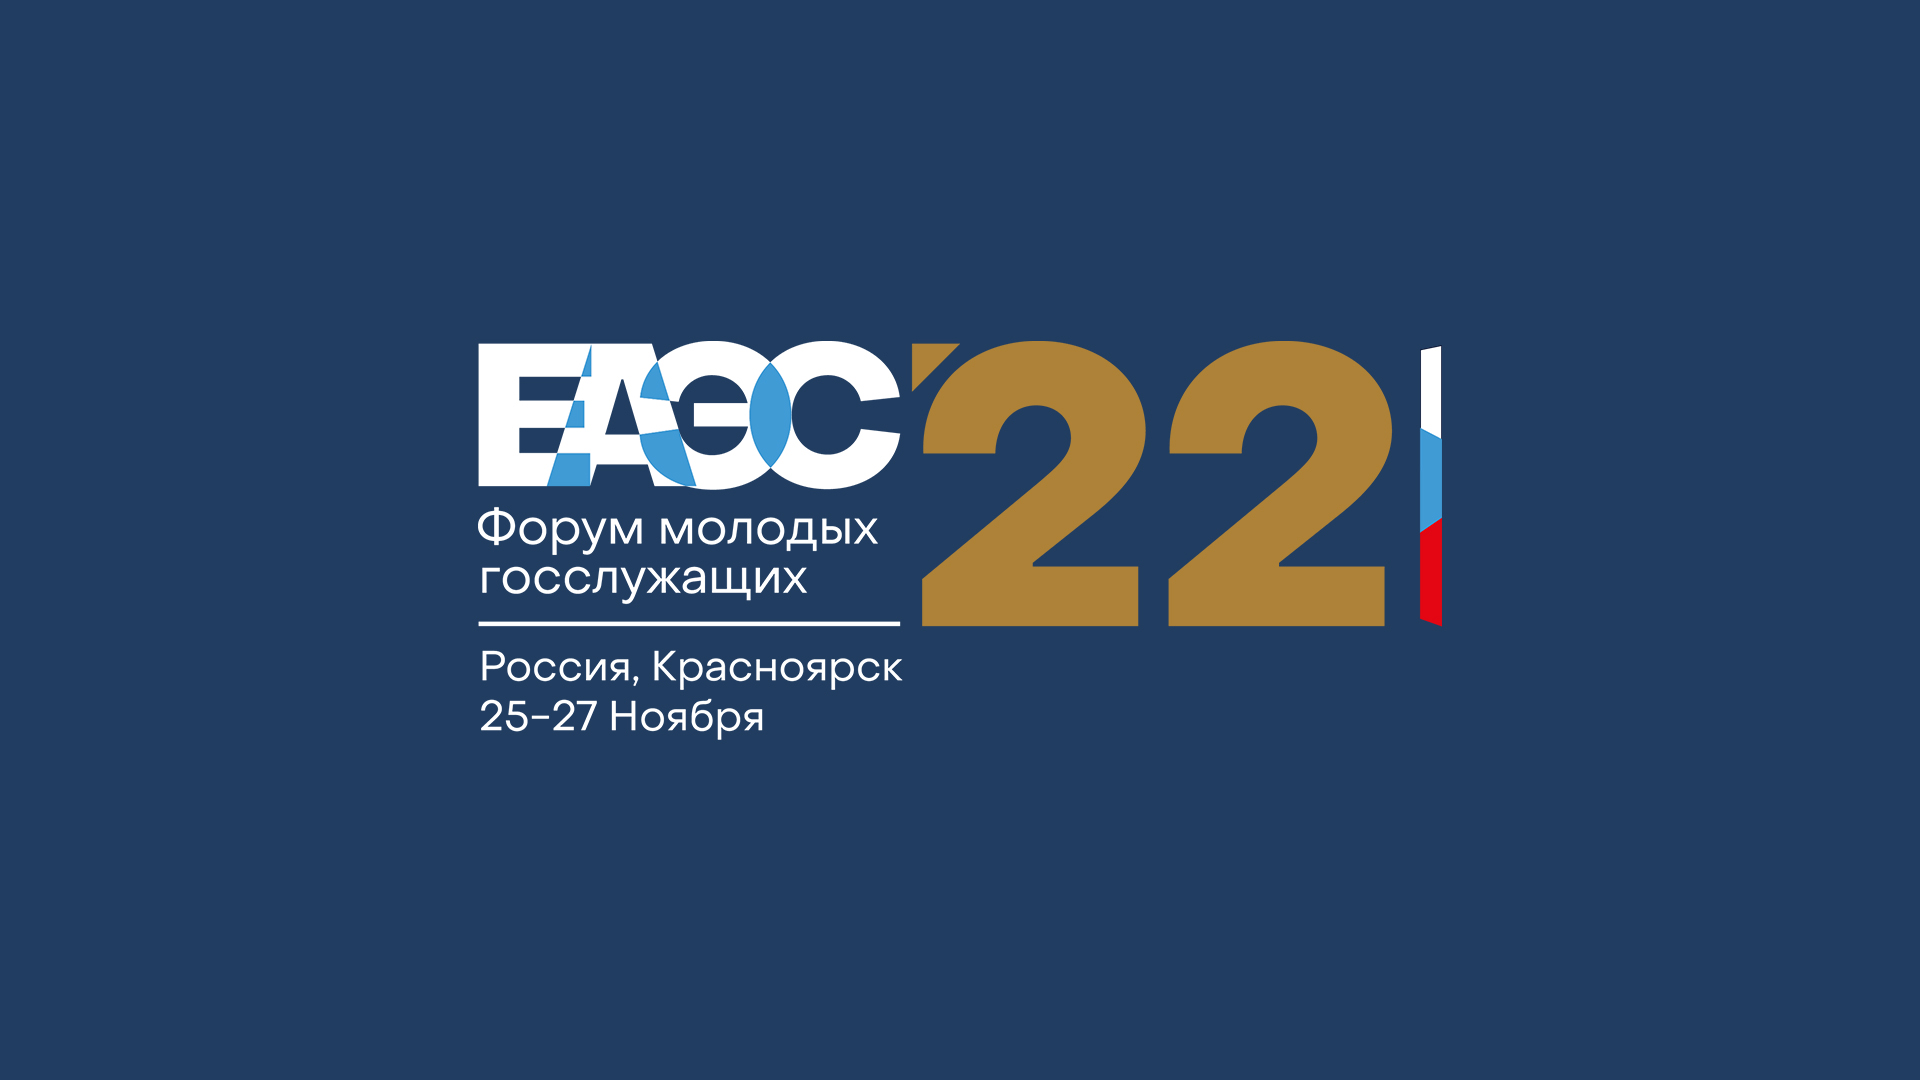 Фирменный стиль Форум ЕАЭС 2022 — Фирменный стиль